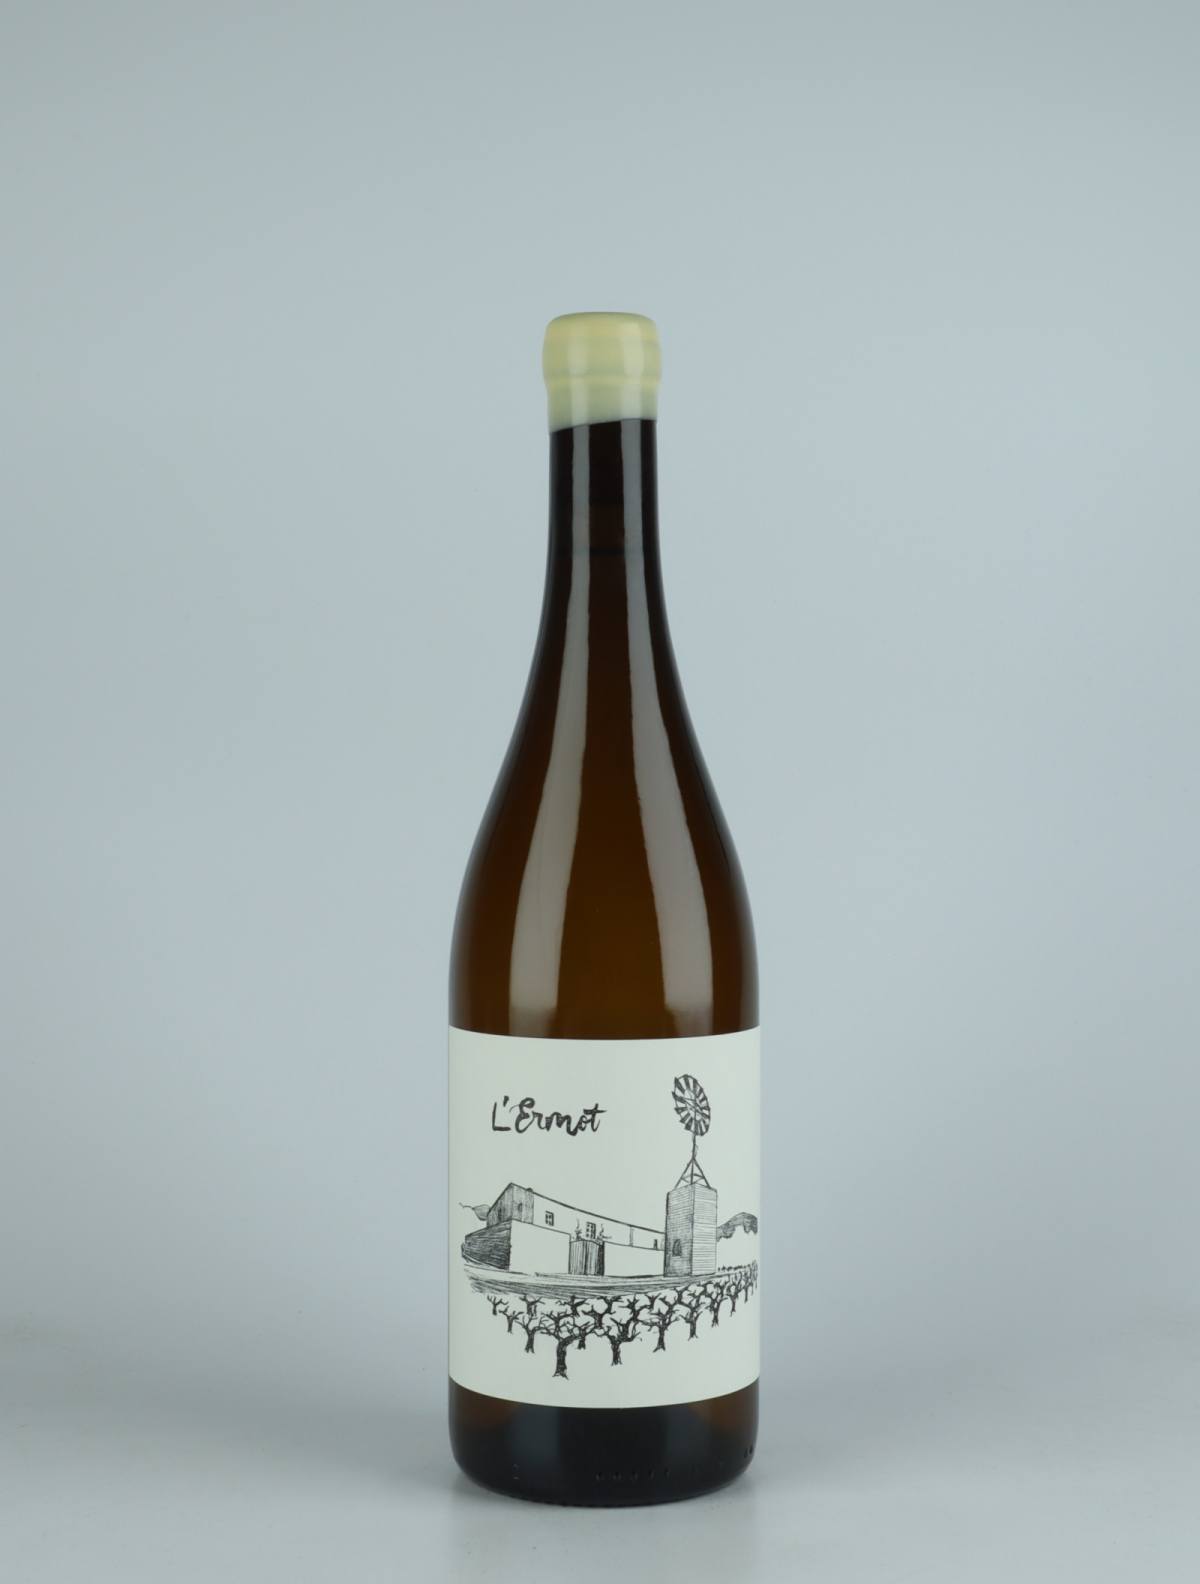 En flaske 2021 L'Ermot Hvidvin fra Celler la Salada, Penedès i Spanien